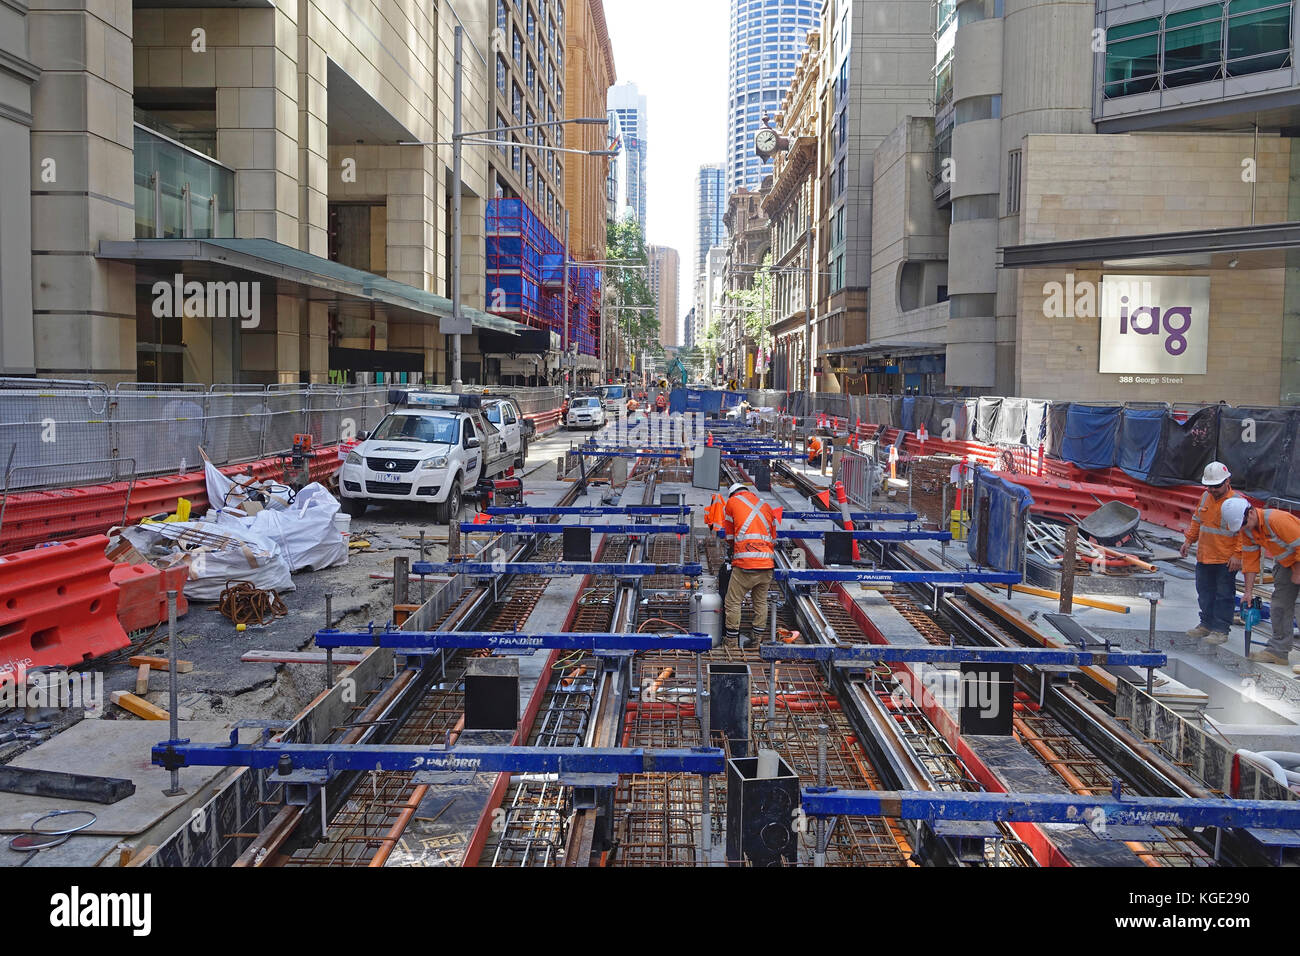 Lavori di costruzione posa di binari in acciaio lungo George Street in CBD di Sydney (quartiere centrale degli affari) Per la tratta South East Light Rail di 12 km Foto Stock